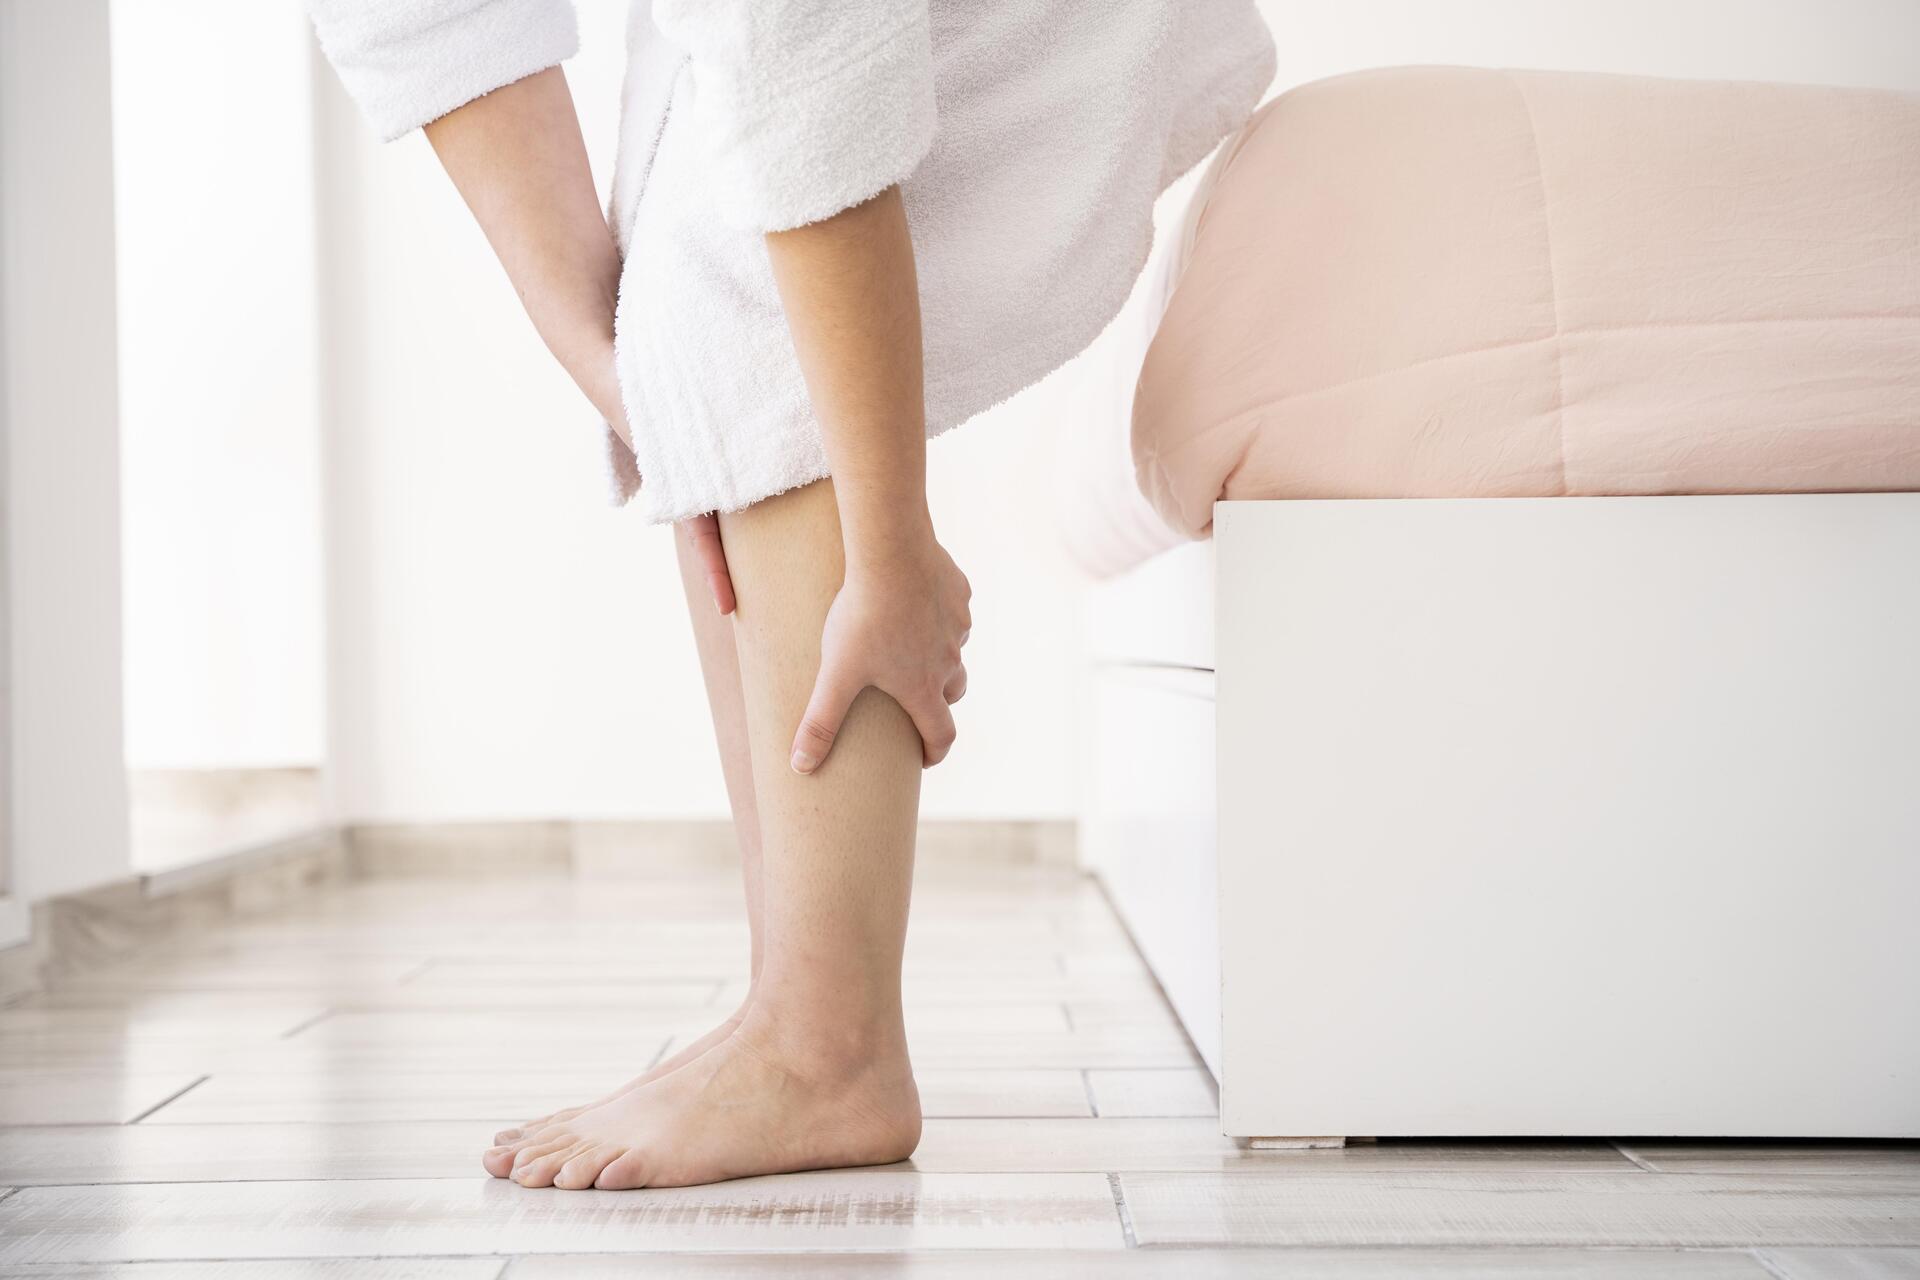 Судороги в ногах: когда нужно идти к врачу